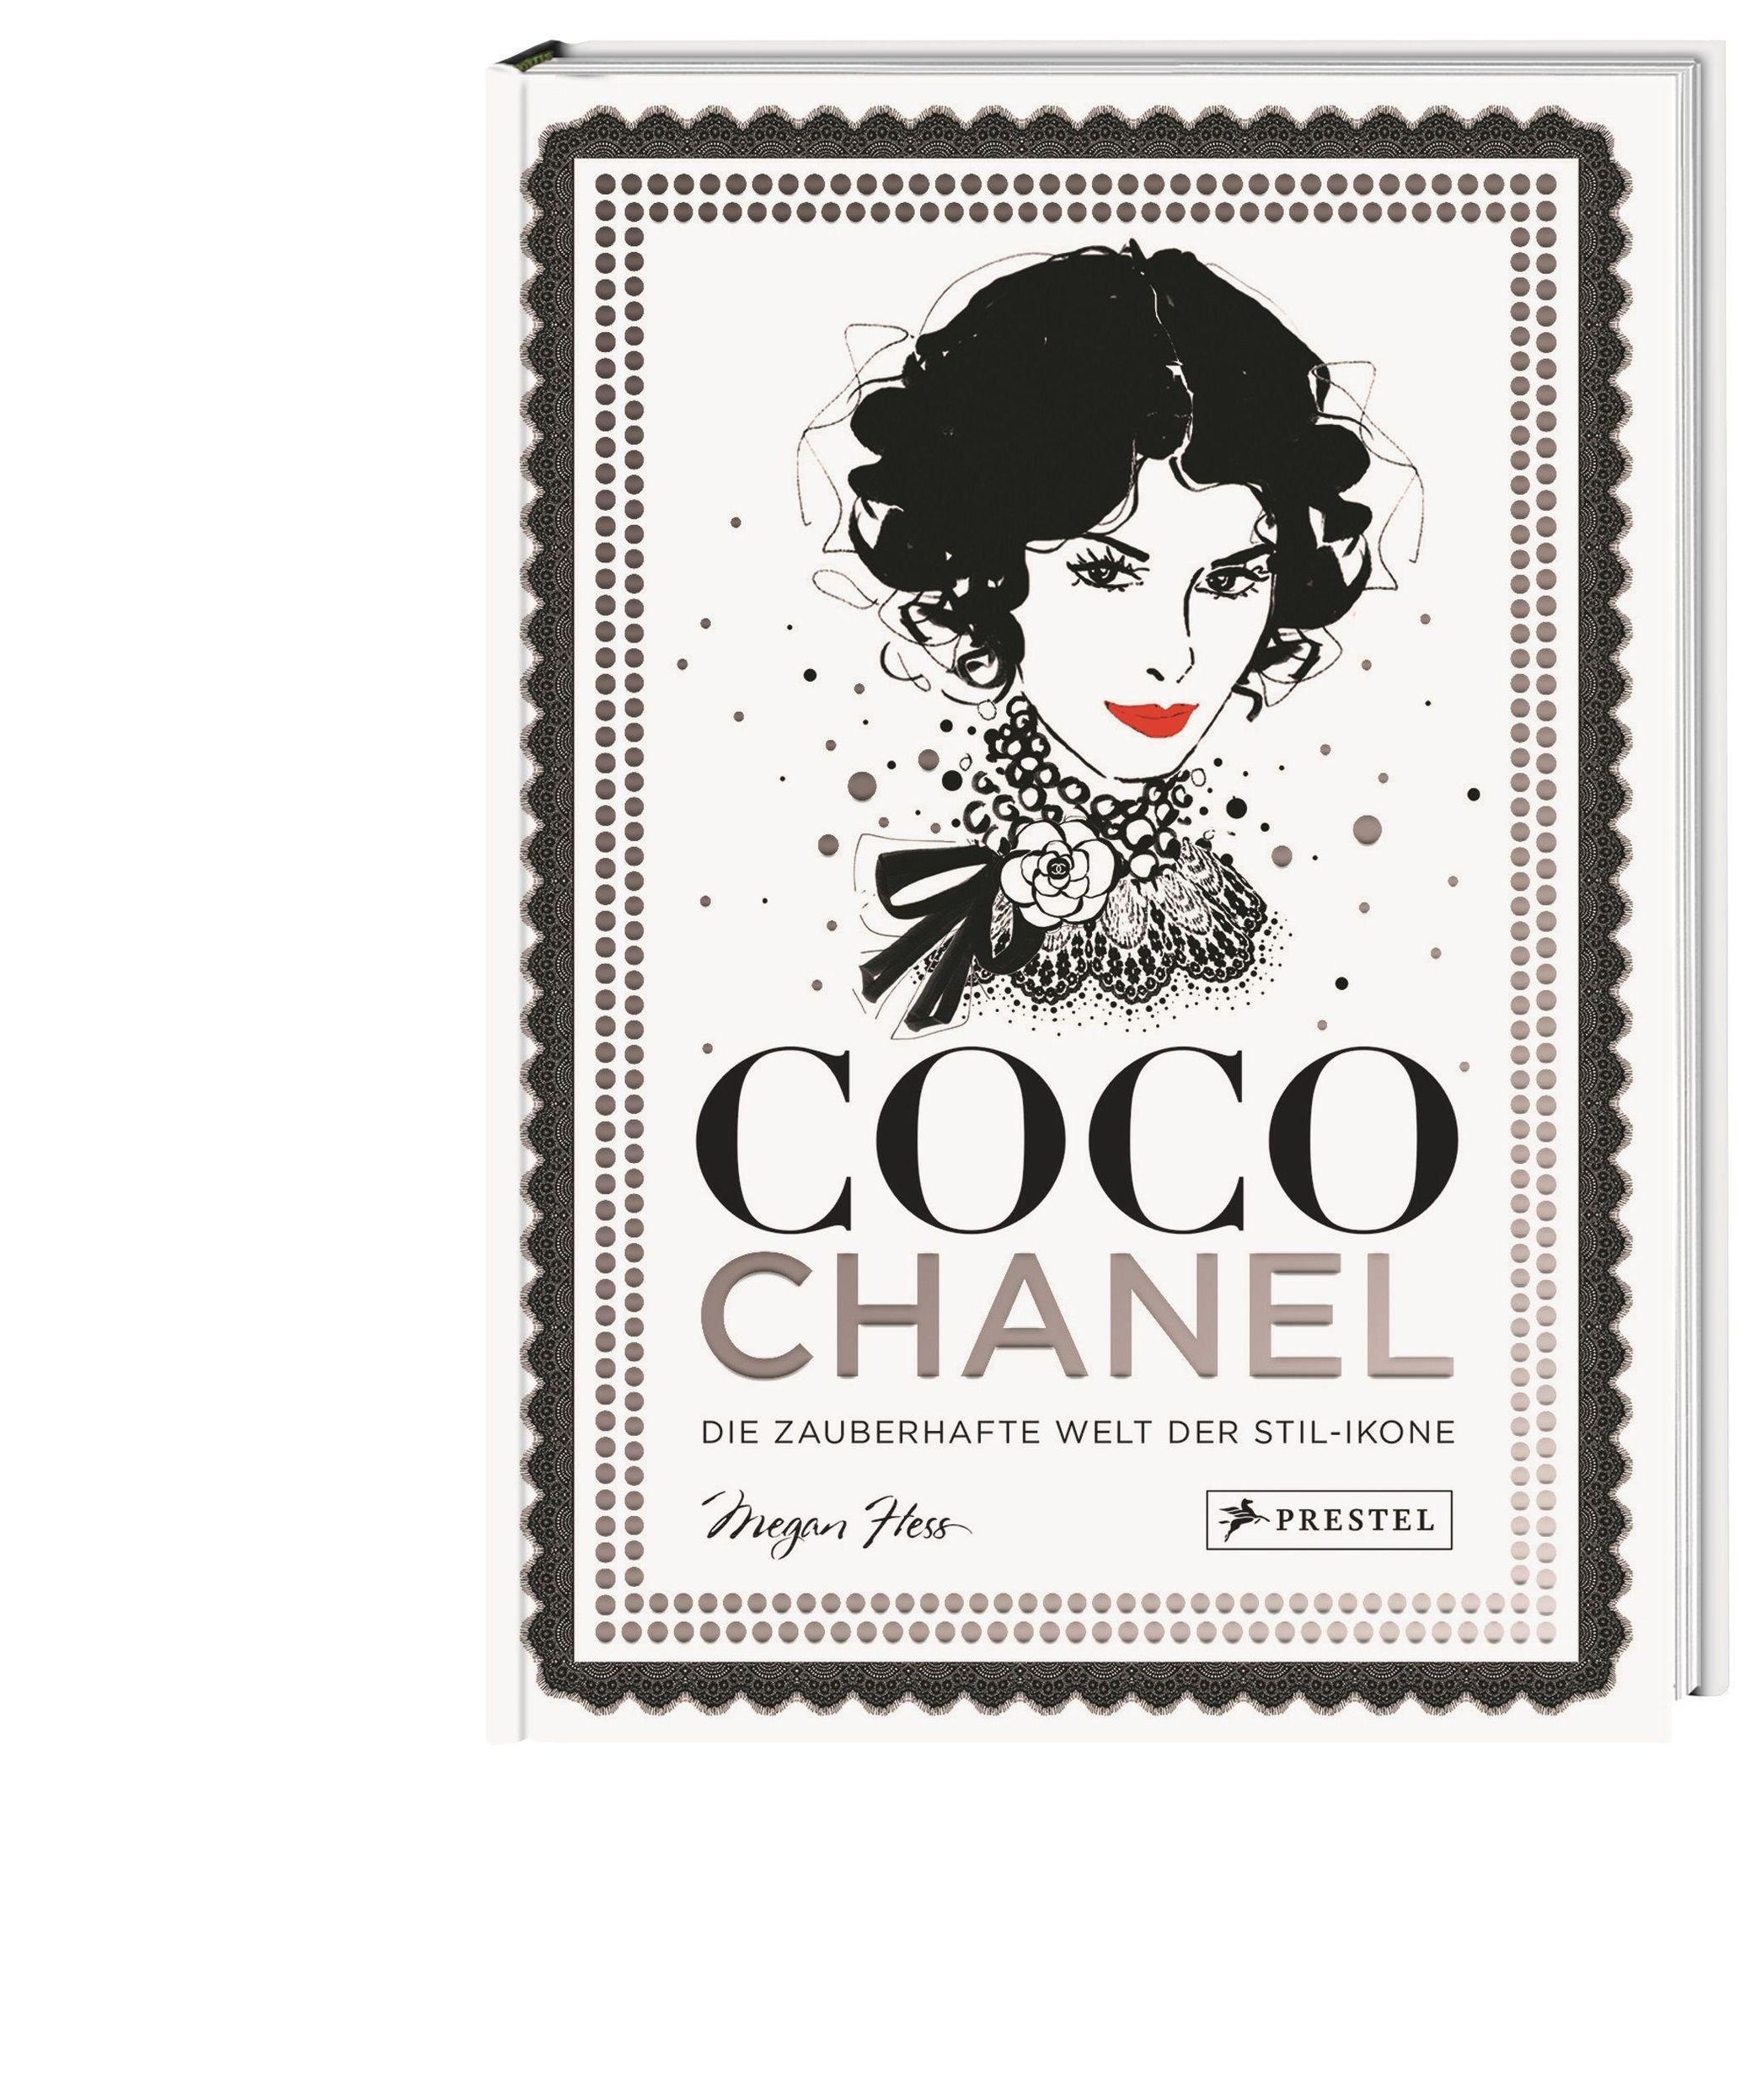 Coco Chanel Buch von Megan Hess versandkostenfrei bestellen - Weltbild.de